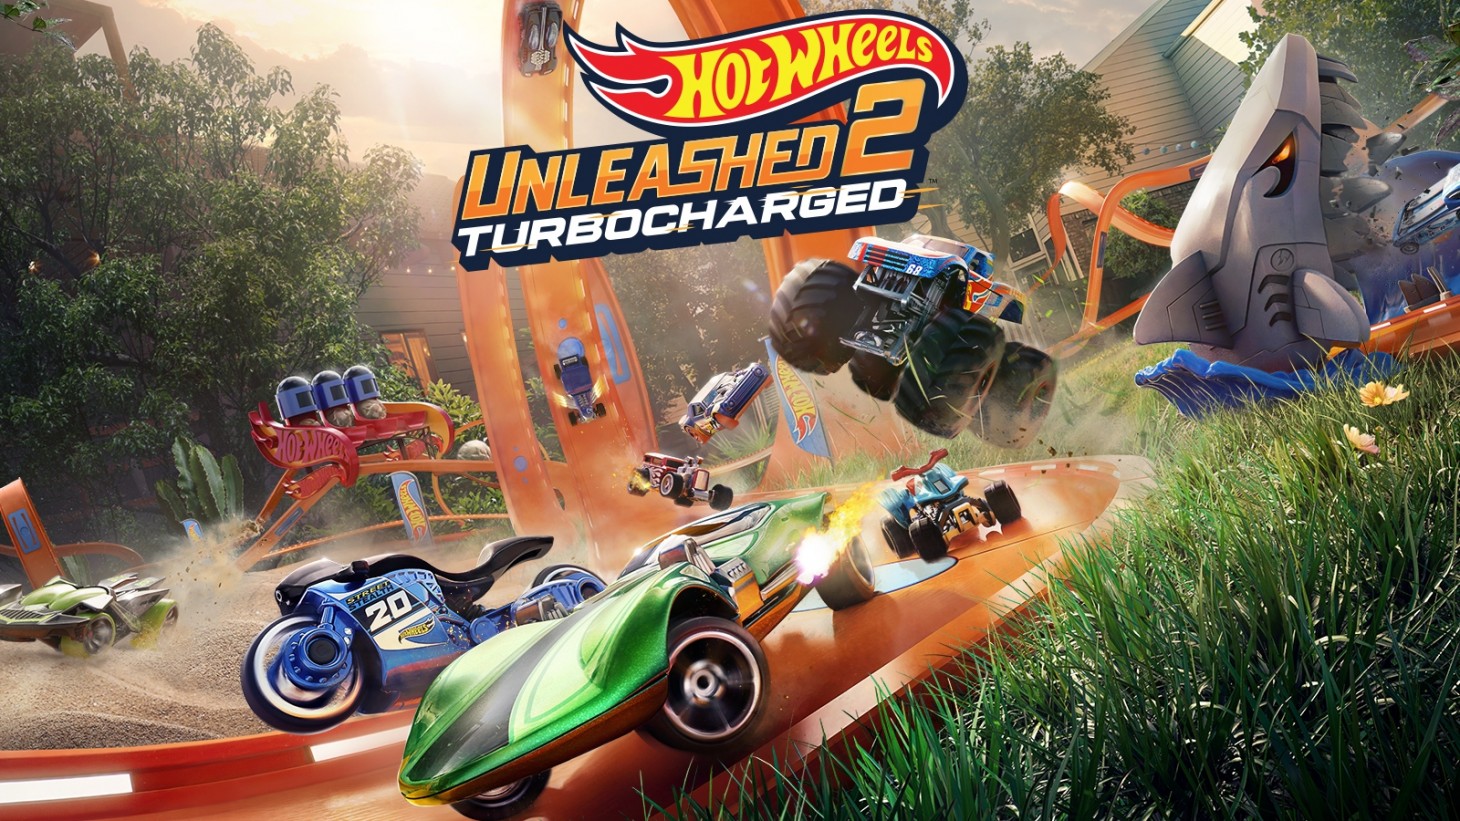 Milestone kündigte die Fortsetzung von Hot Wheels Unleashed an - Unleashed 2: Turbocharged